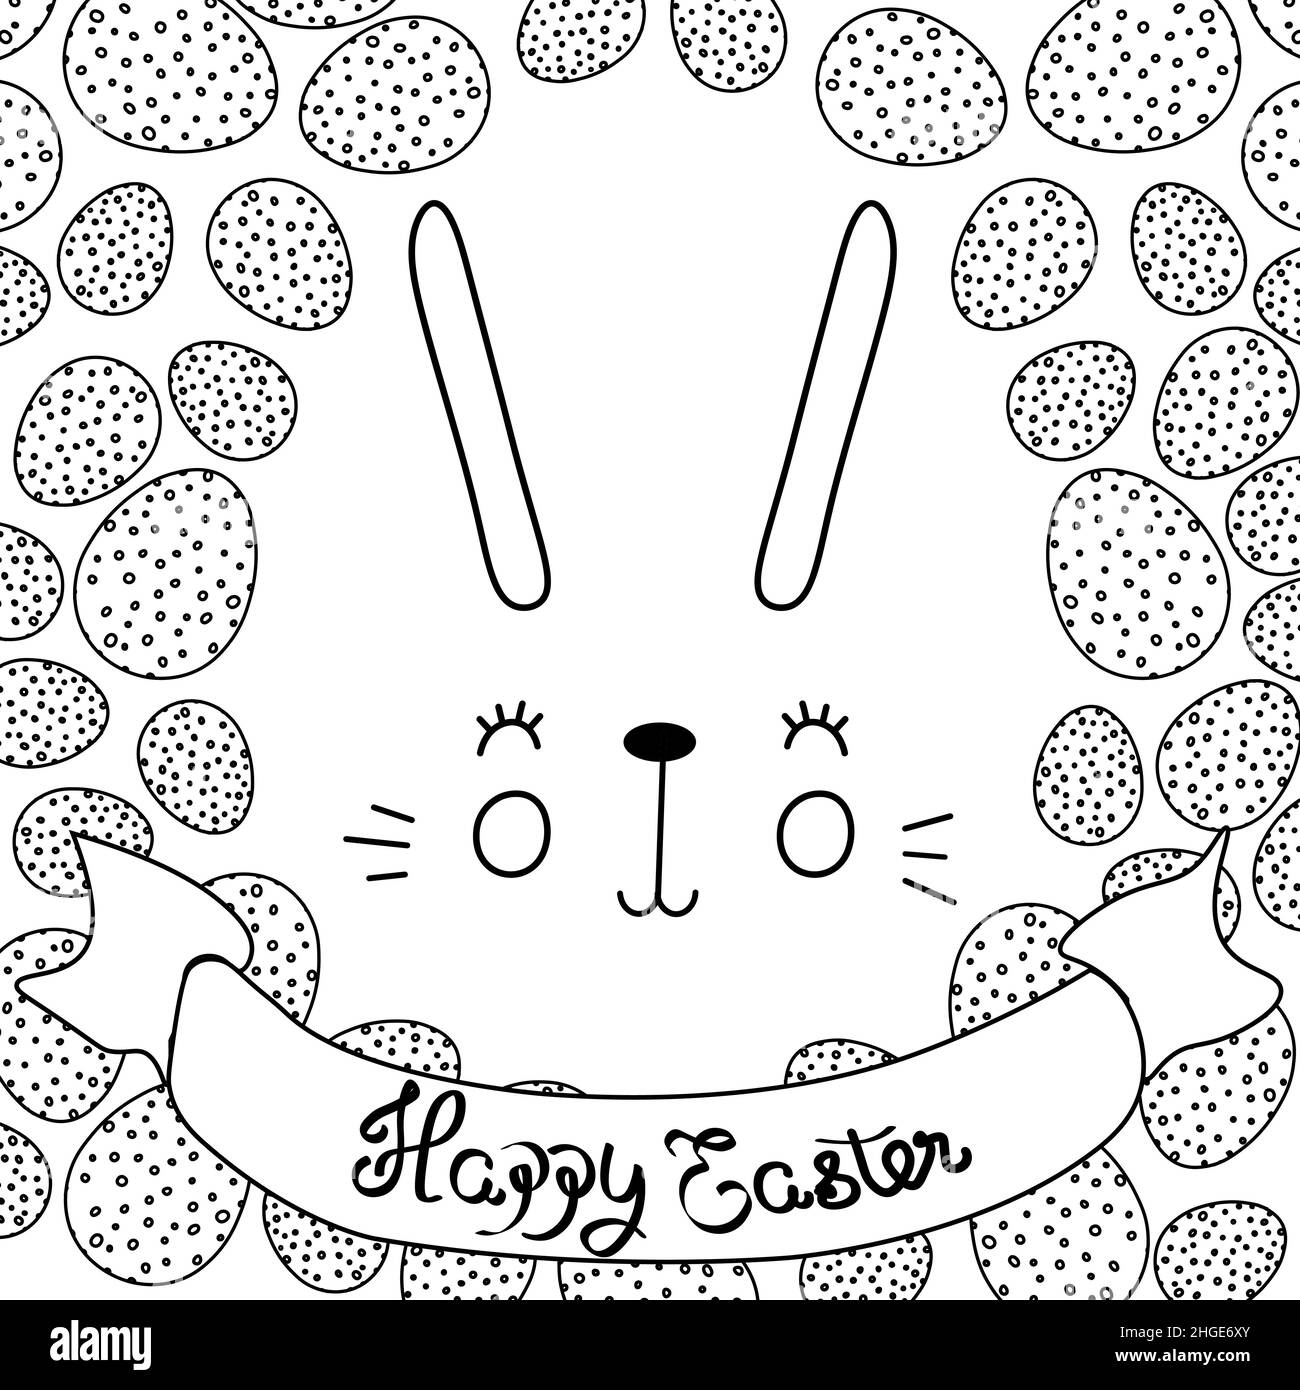 Illustration vectorielle d'un joli lapin avec des œufs brillants.Texte de voeux joyeuses Pâques.Conception pour le Web, le site, la bannière, l'affiche, la carte,impression papier, carte postale Illustration de Vecteur